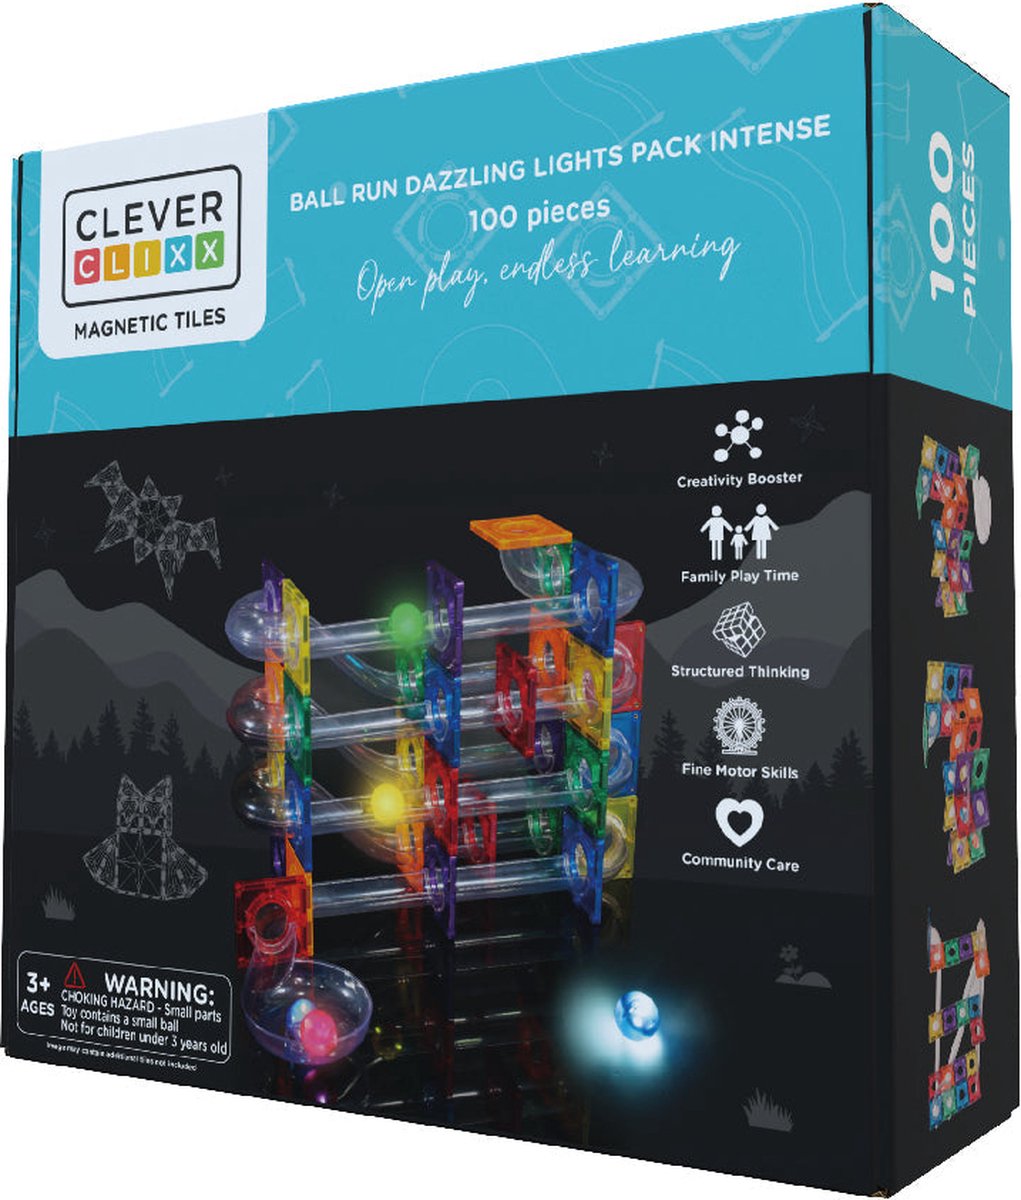 Cleverclixx Ball Run Dazzling Lights Pack Intense | 100 Stuks